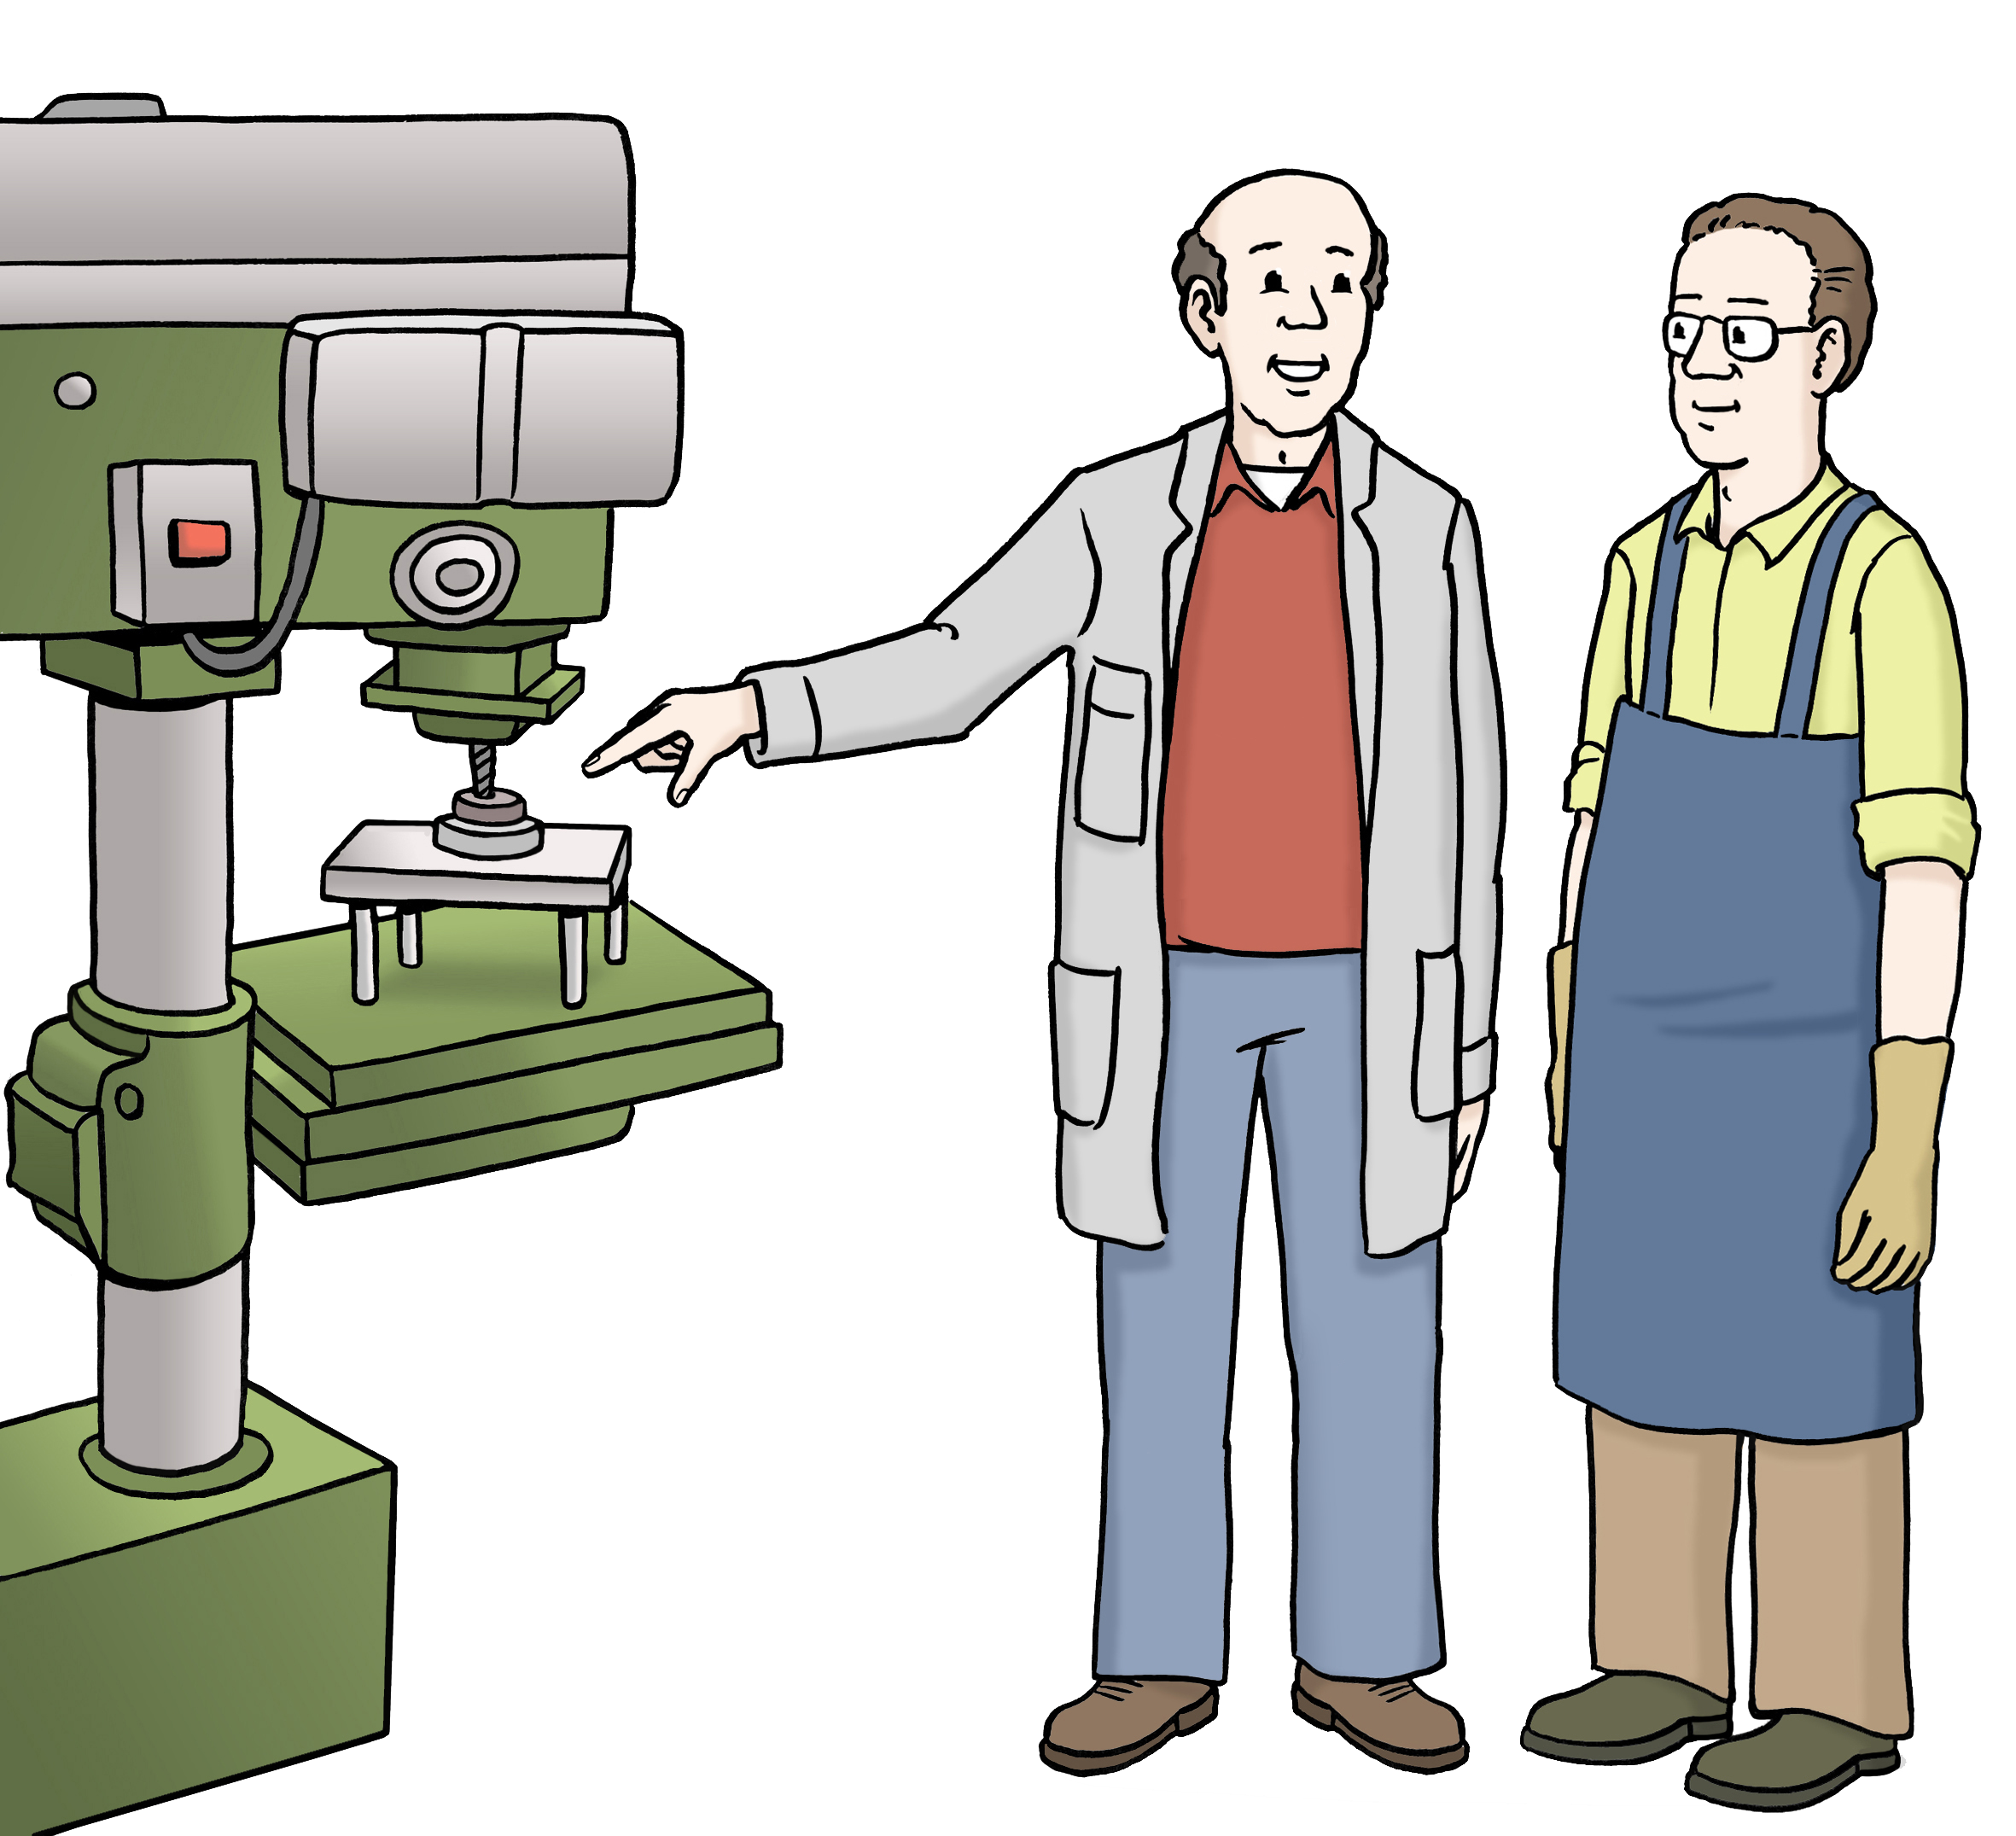 Ein älterer Mann und ein jüngerer Mann stehen neben einer großen Maschine und lächeln.